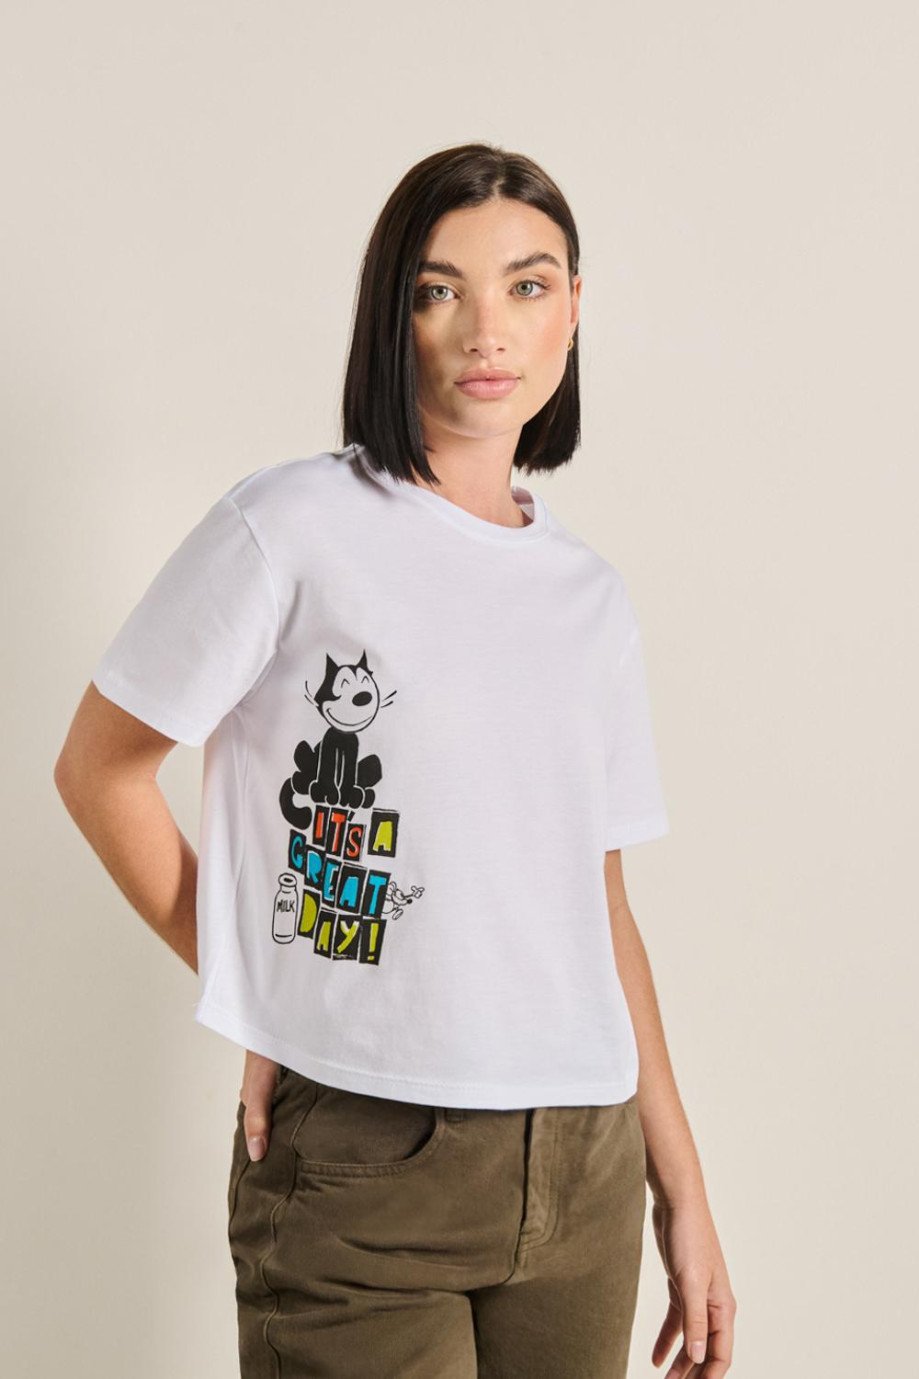 Camiseta crop top crema clara con diseño de Félix el Gato